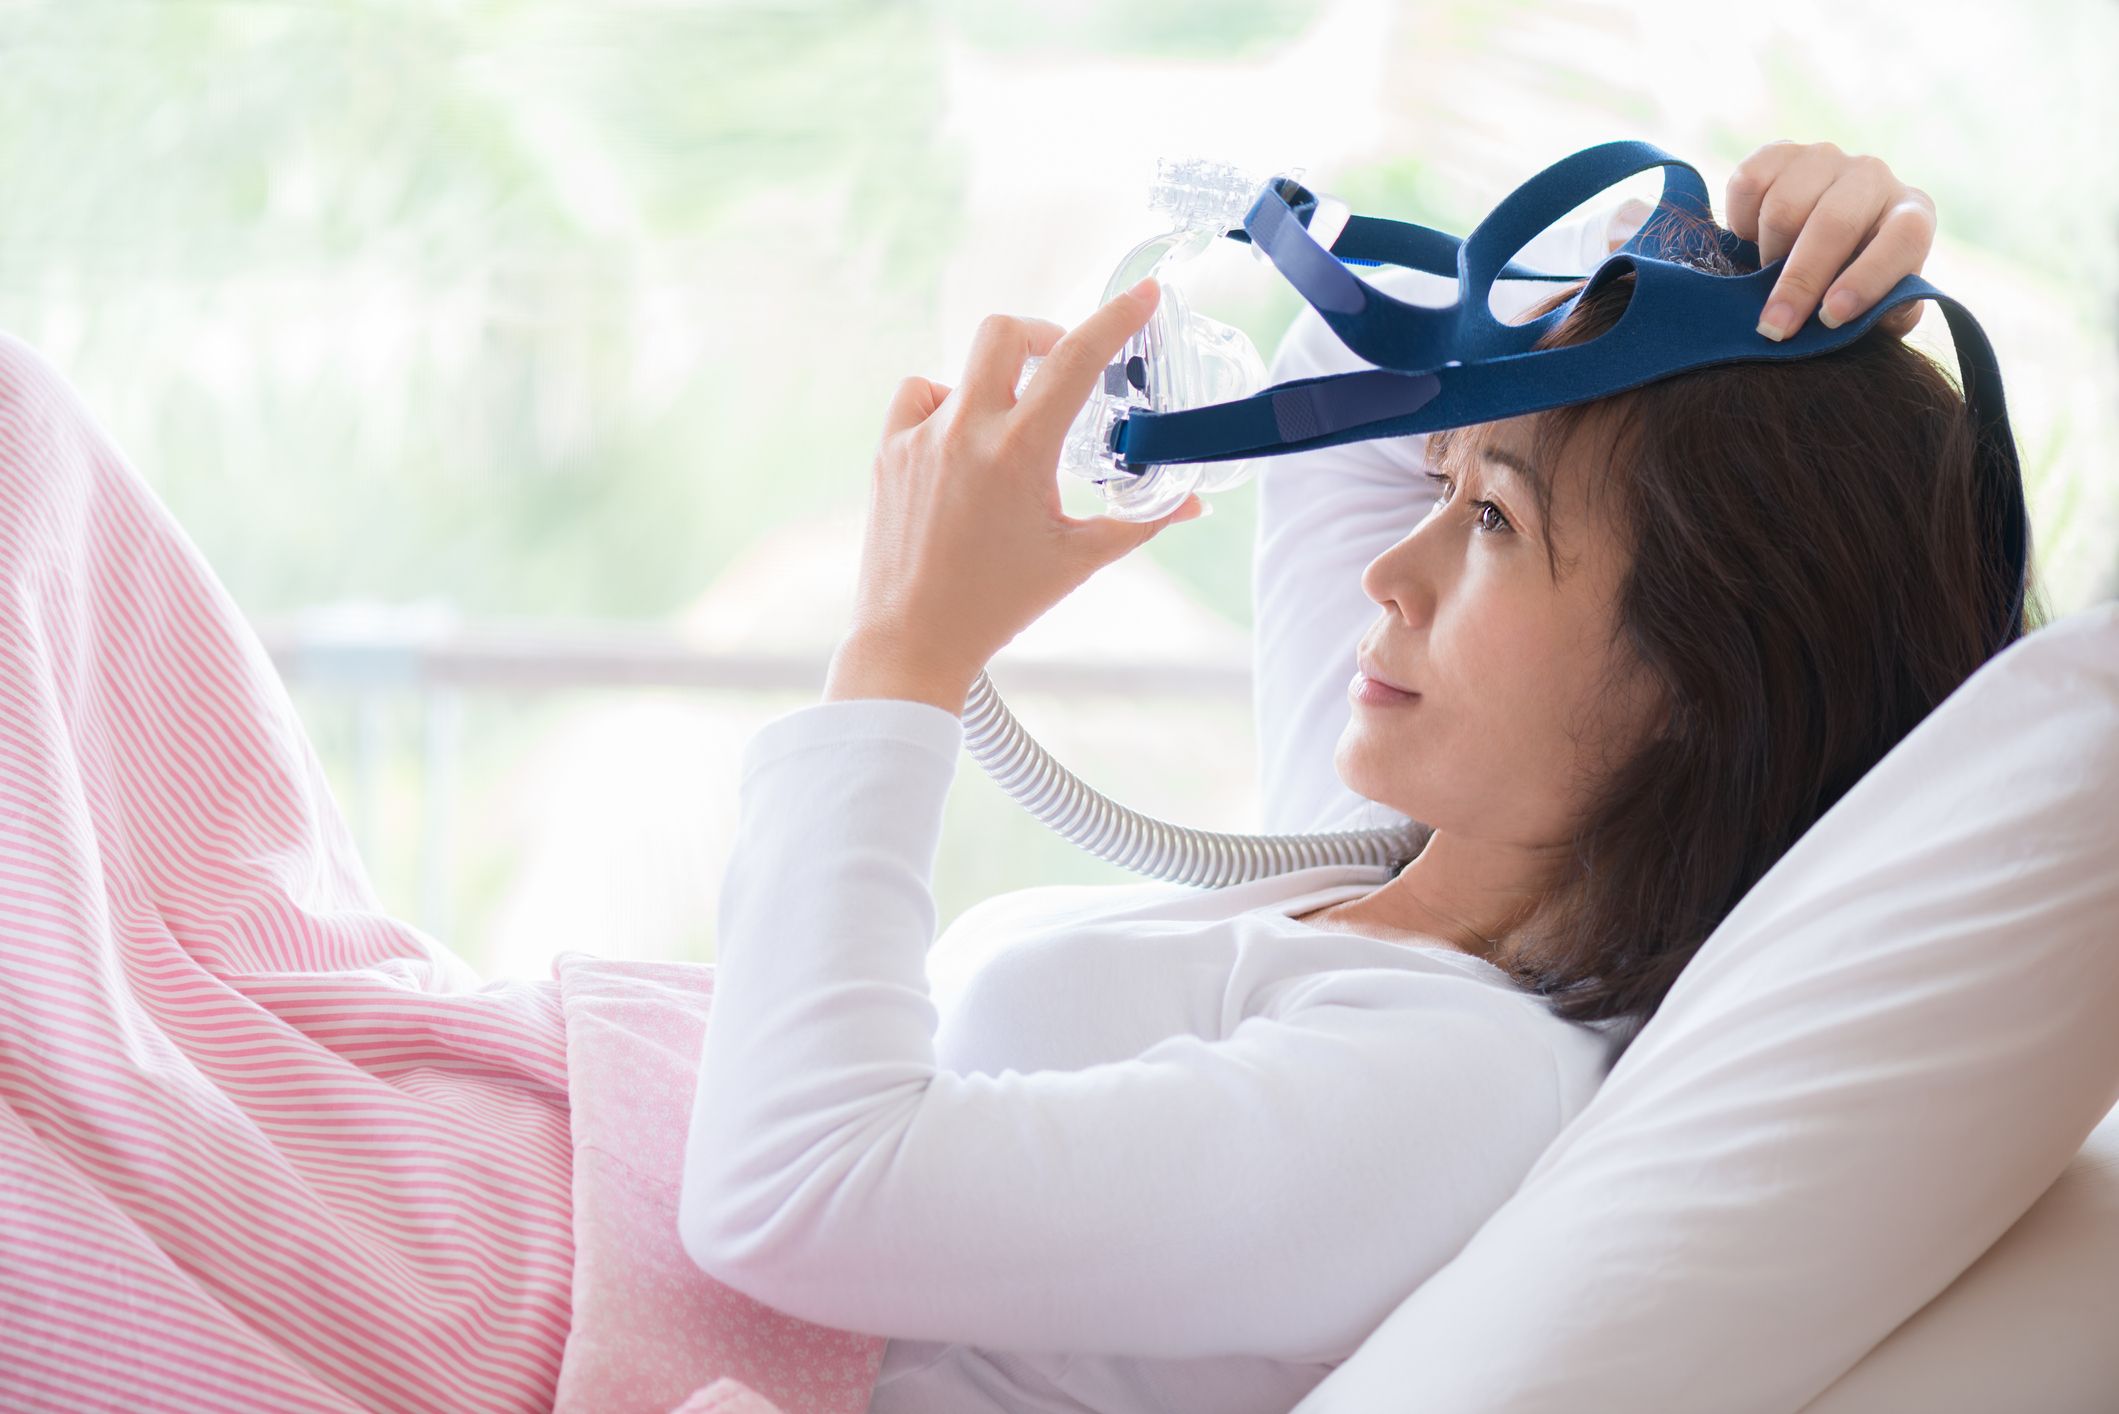 How Your Pyjamas Affect Your Sleep — AccqSleepLabs